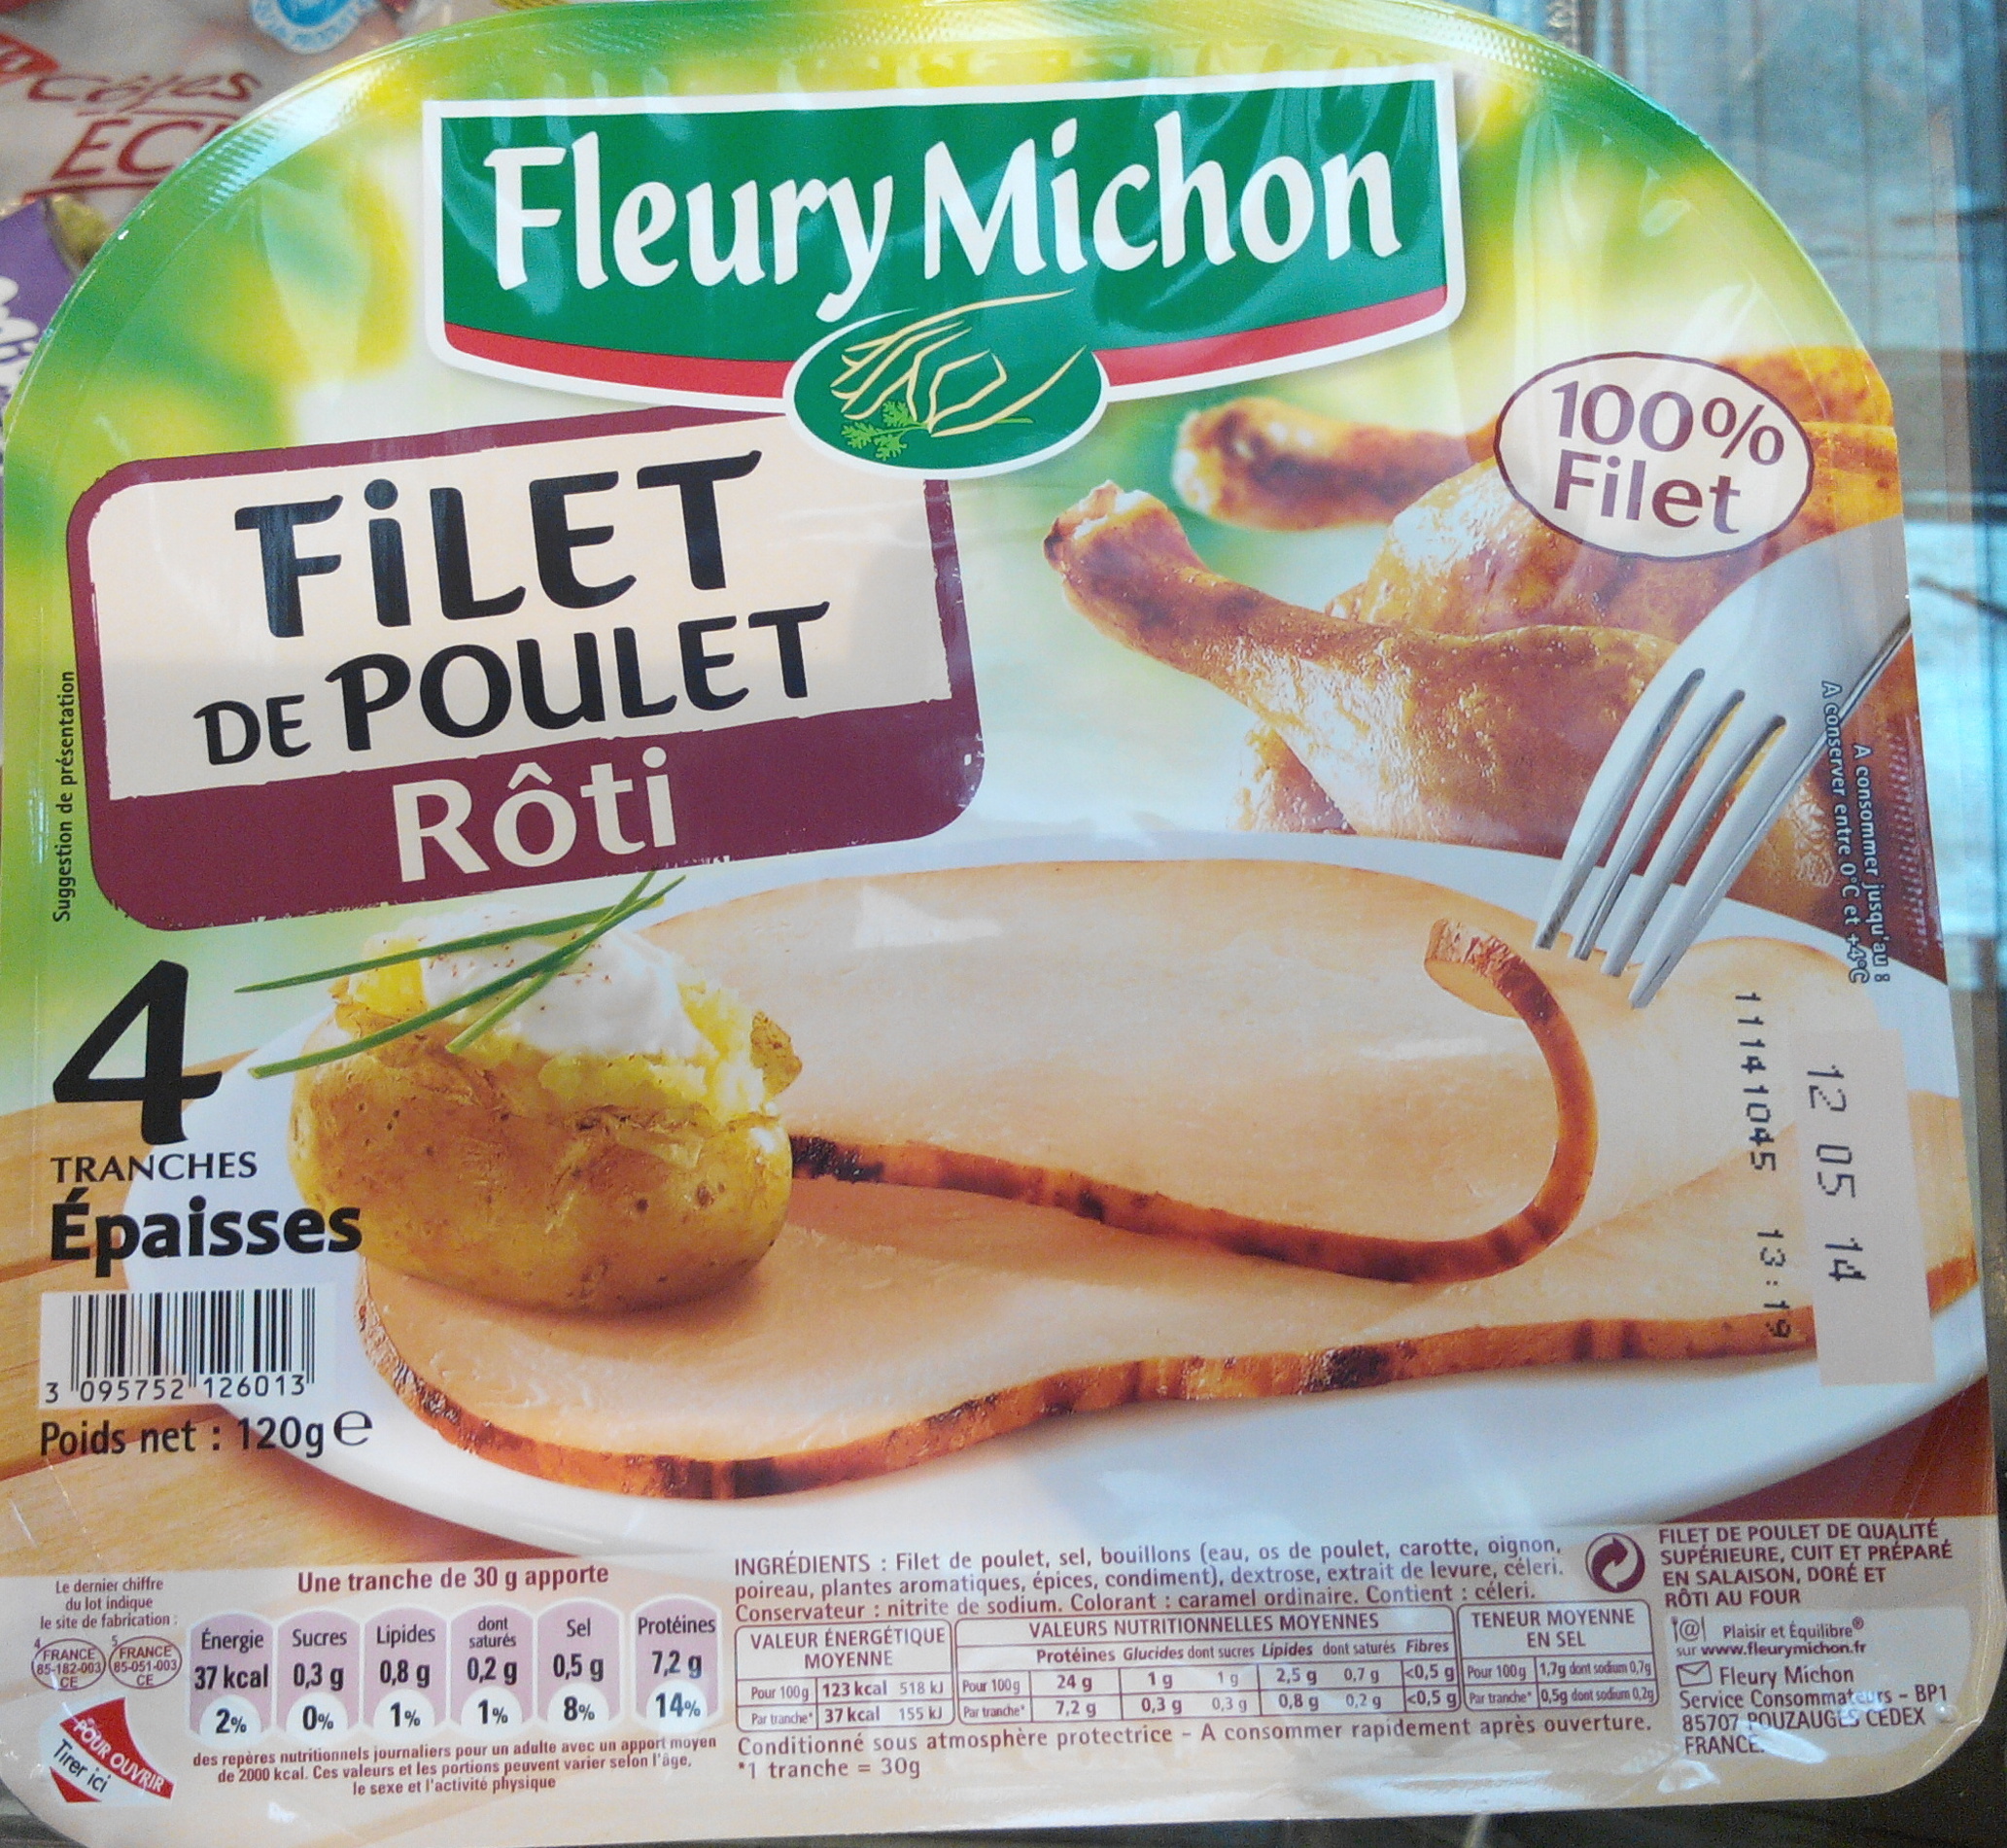 Filet de Poulet Rôti (4 Tranches Épaisses) - Producto - fr